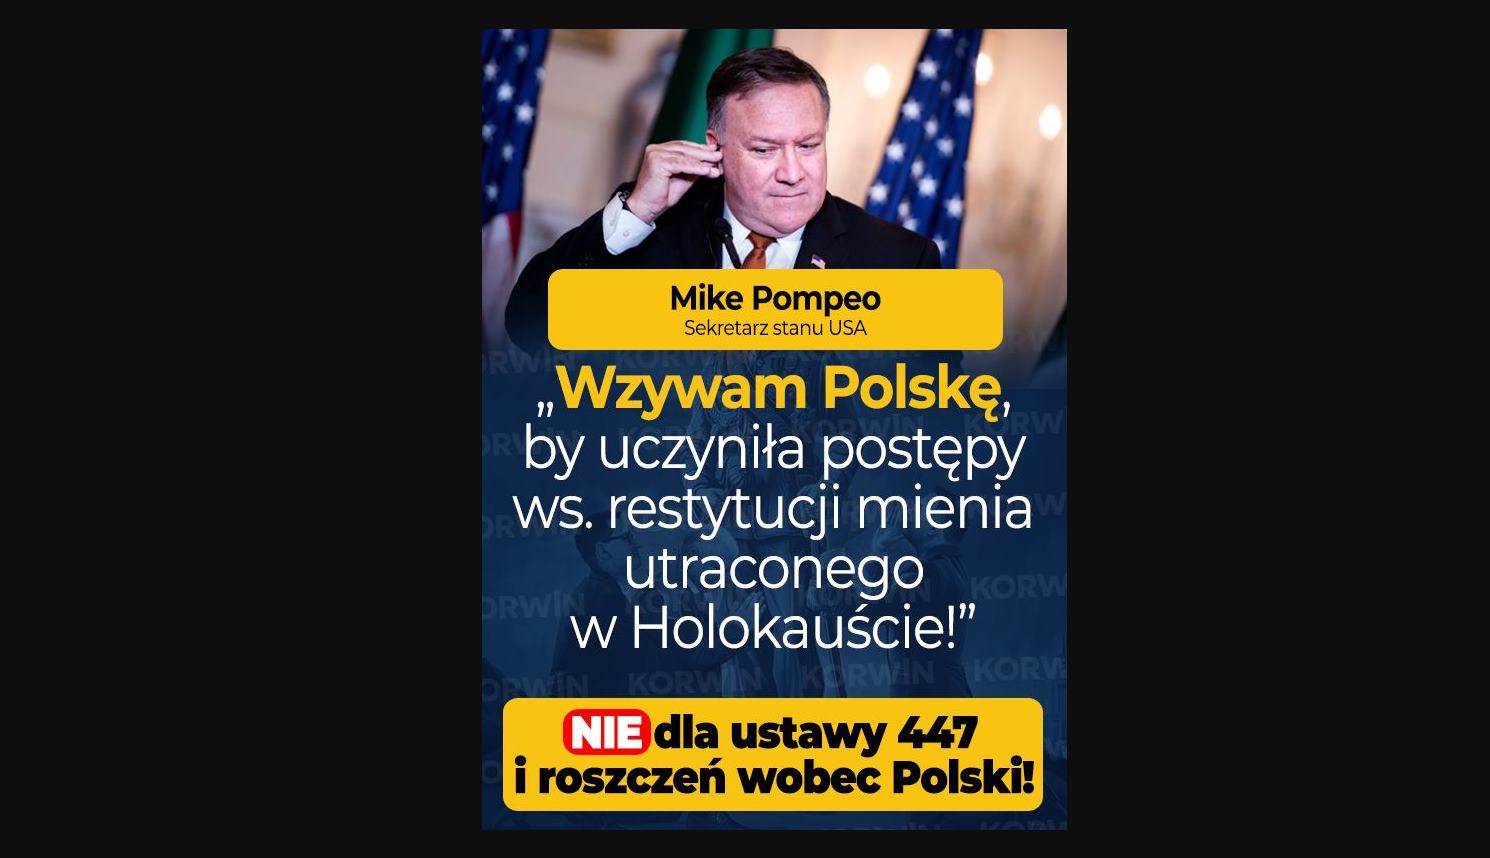 Wzywam Polskę by uczyniła postępy ws. restytucji mienia utraconego w Holokauście!